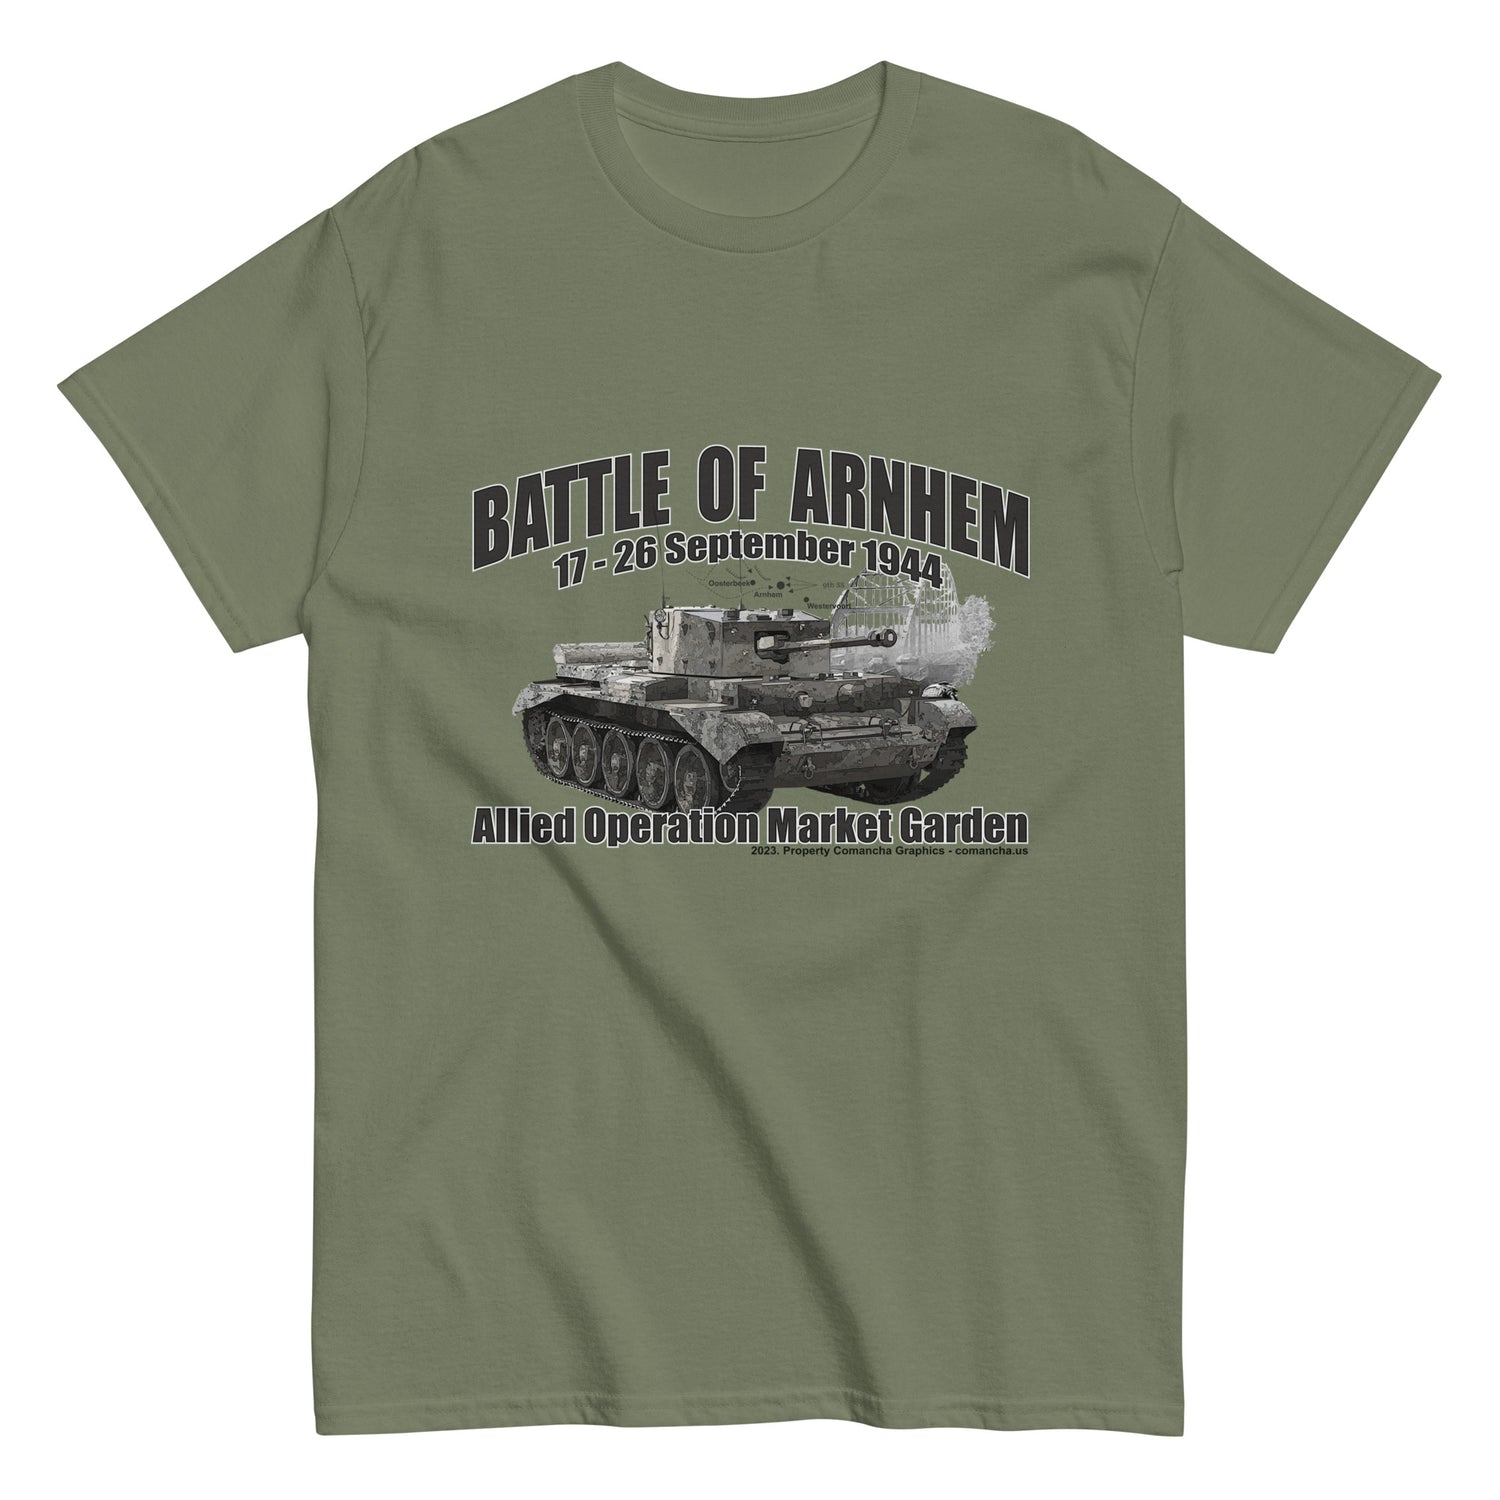 Battle of Arnhem t-shirt,Operation Market Garden t-shirt, d-day t-shirt,veterans t-shirt,comancha t-shirt,